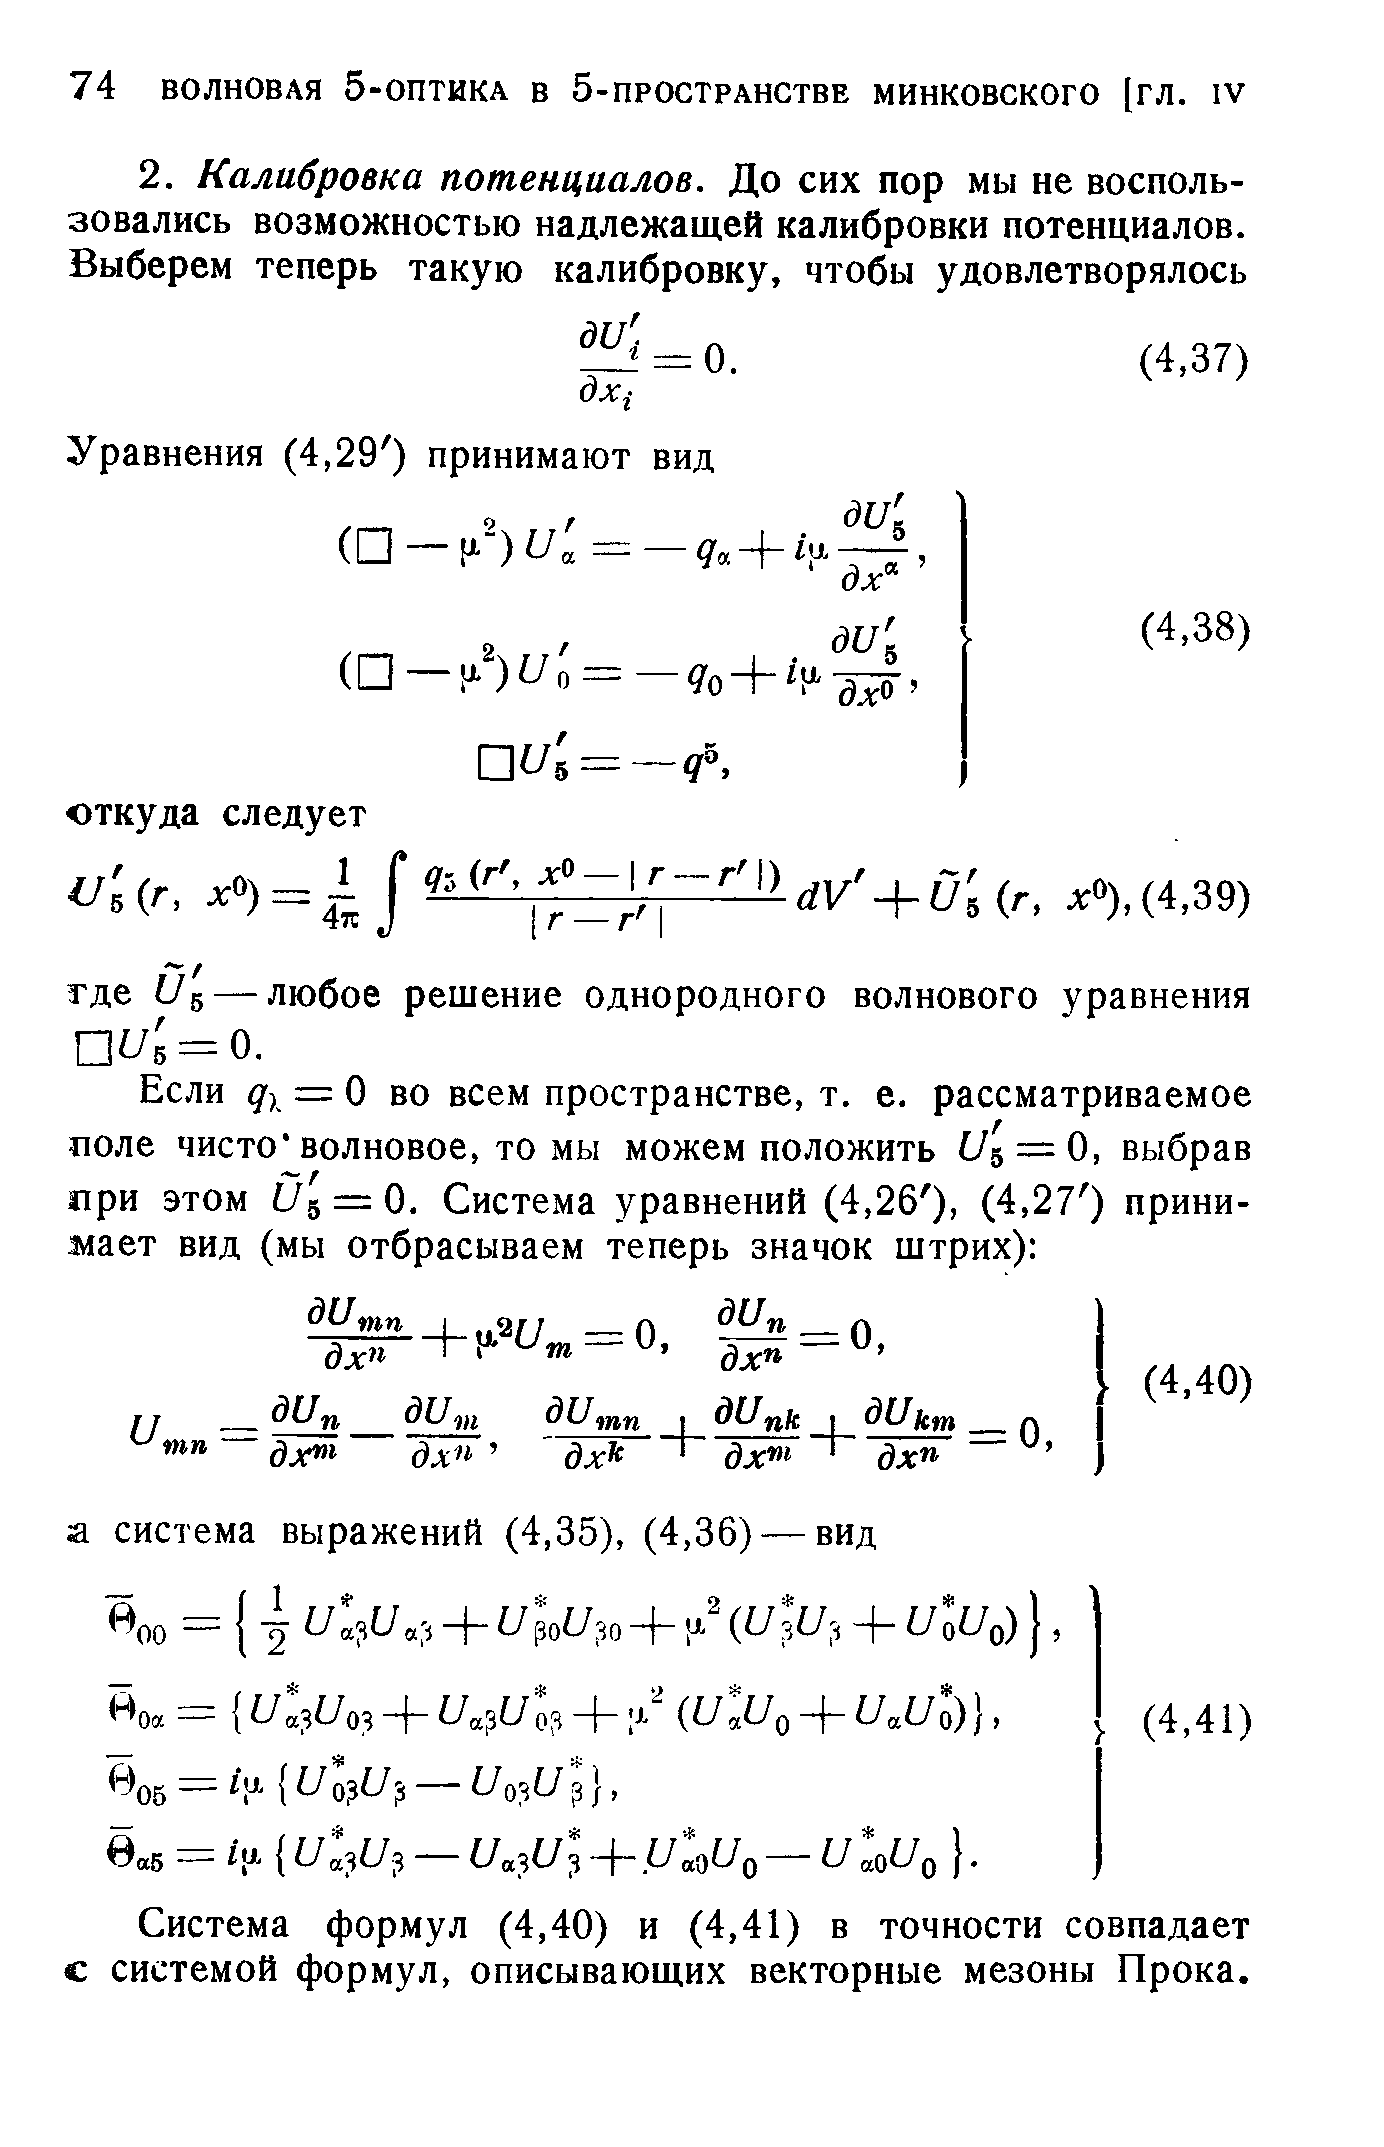 Система формул (4,40) и (4,41) в точности совпадает с системой формул, описывающих векторные мезоны Прока.
